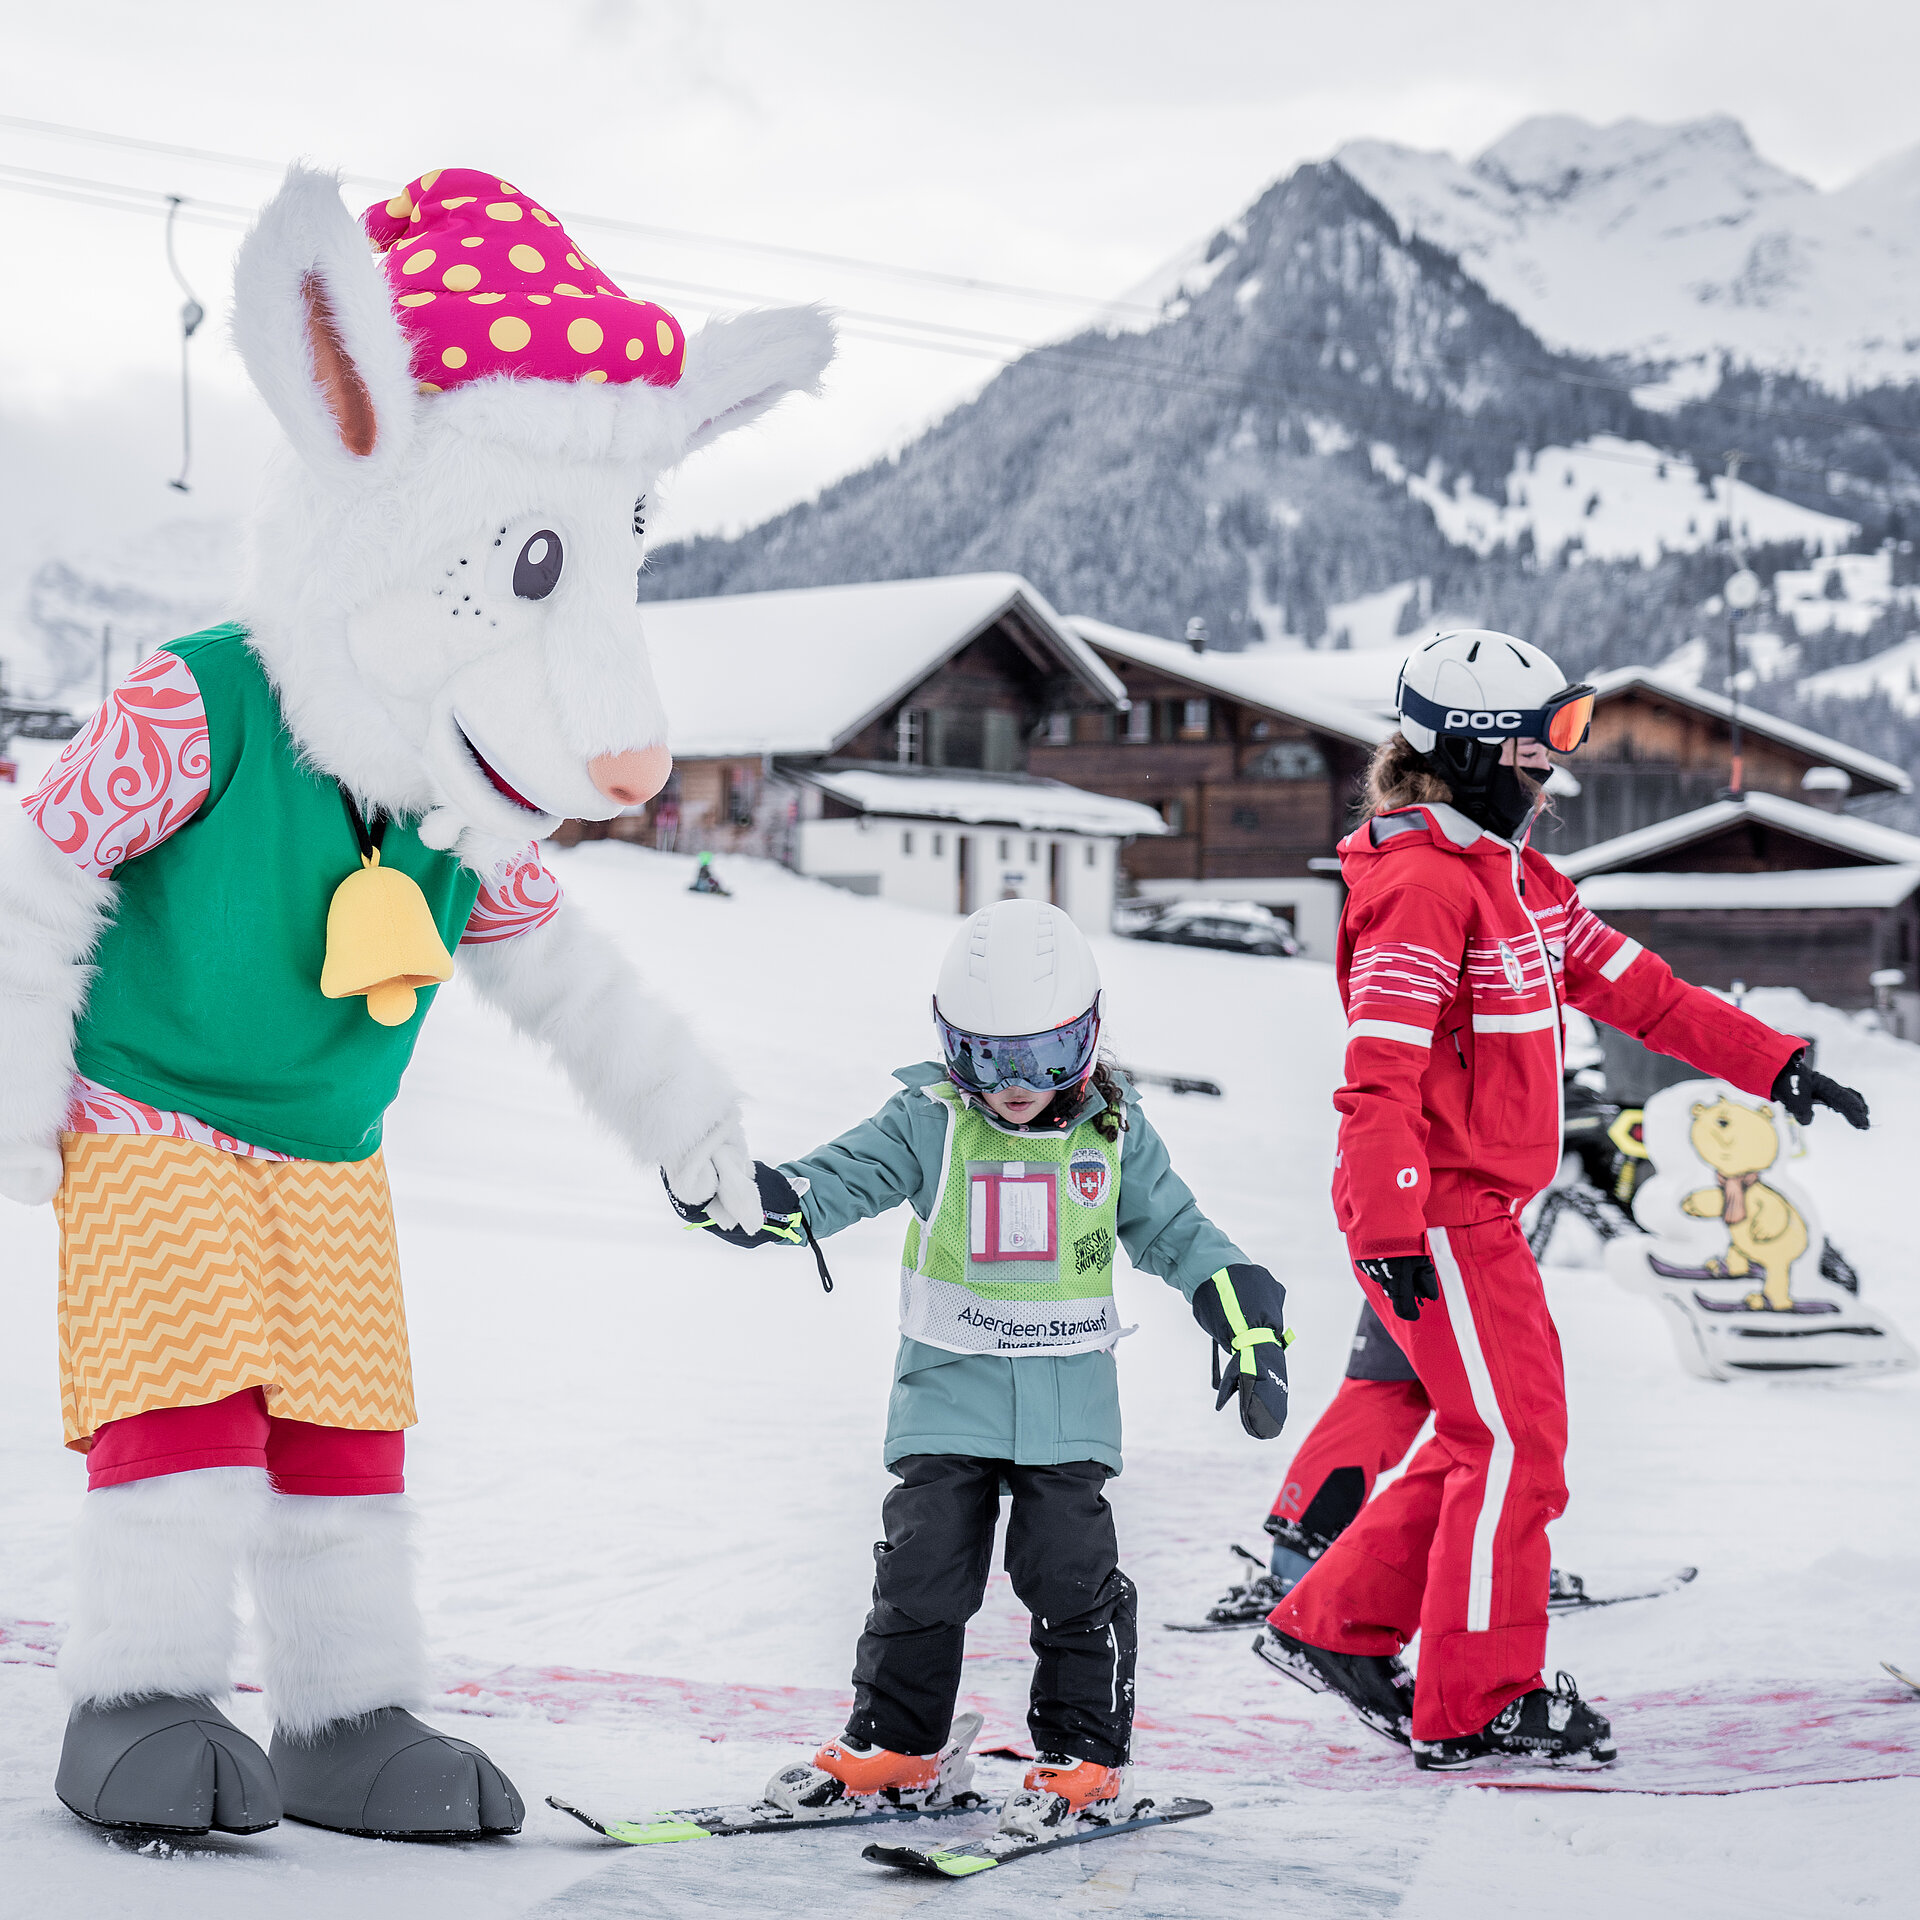 Das Maskottchen Saani im Kinderland der Skischule Gstaad mit einer rot gekleideten Skilehrerin und zwei kleinen Kindern auf Ski.